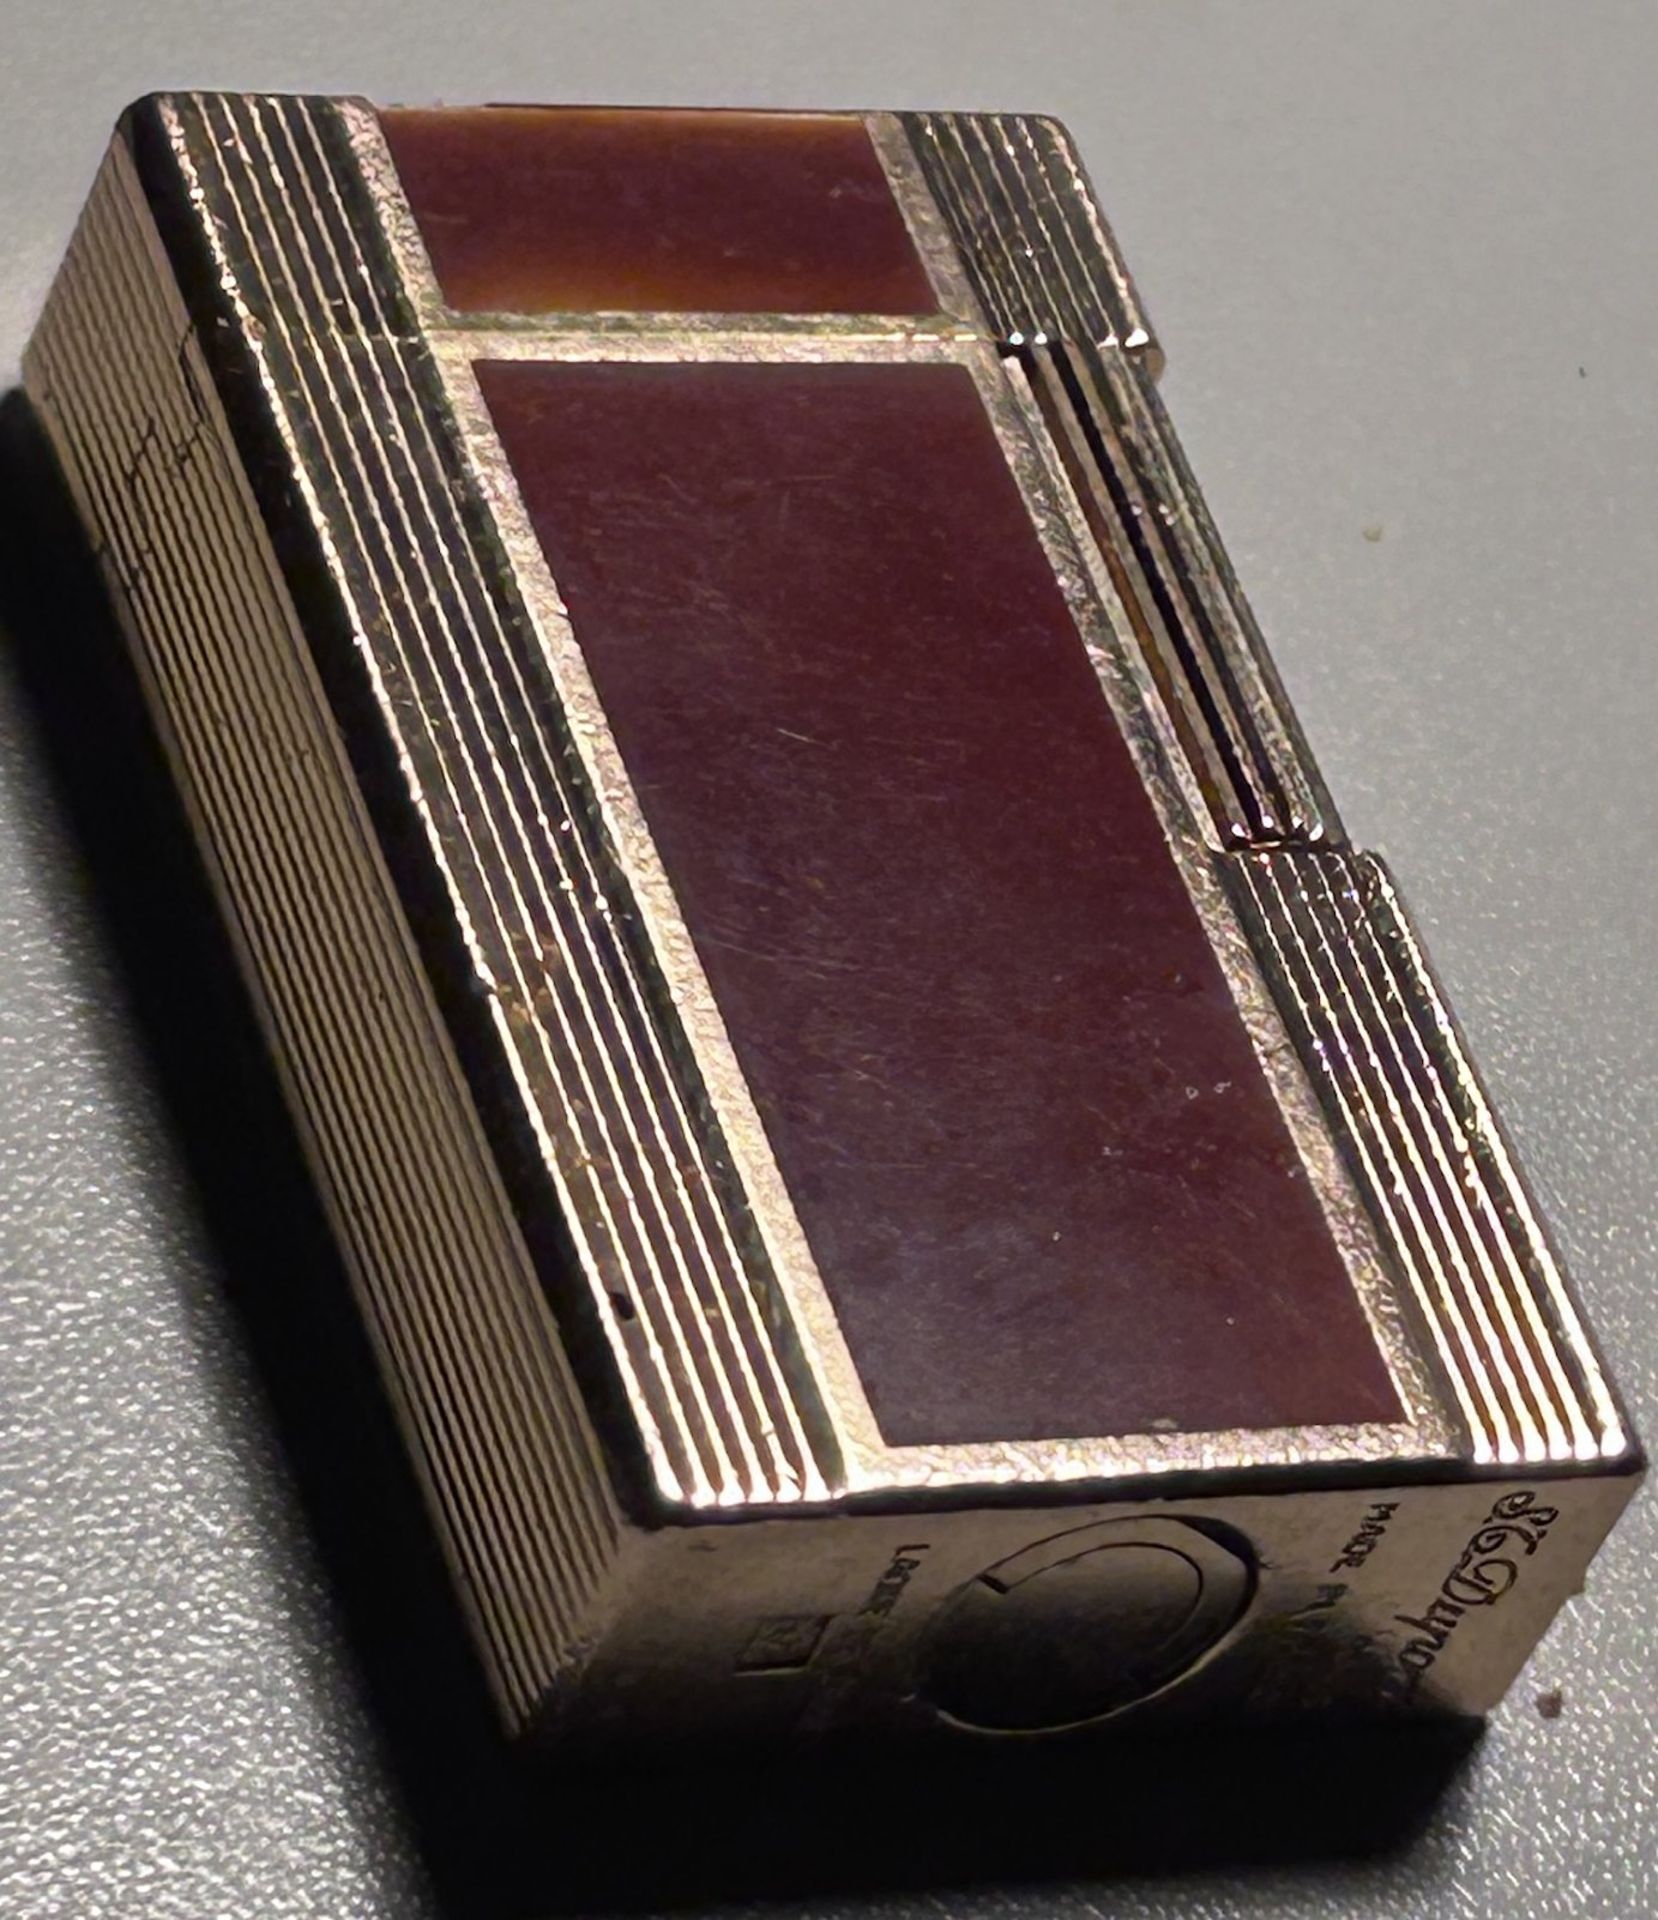 S.T., Dupont, Paris Feuerzeug, Brown Chinese Lack, 6x3,5 cm, funktionstüächtig, - Image 4 of 5